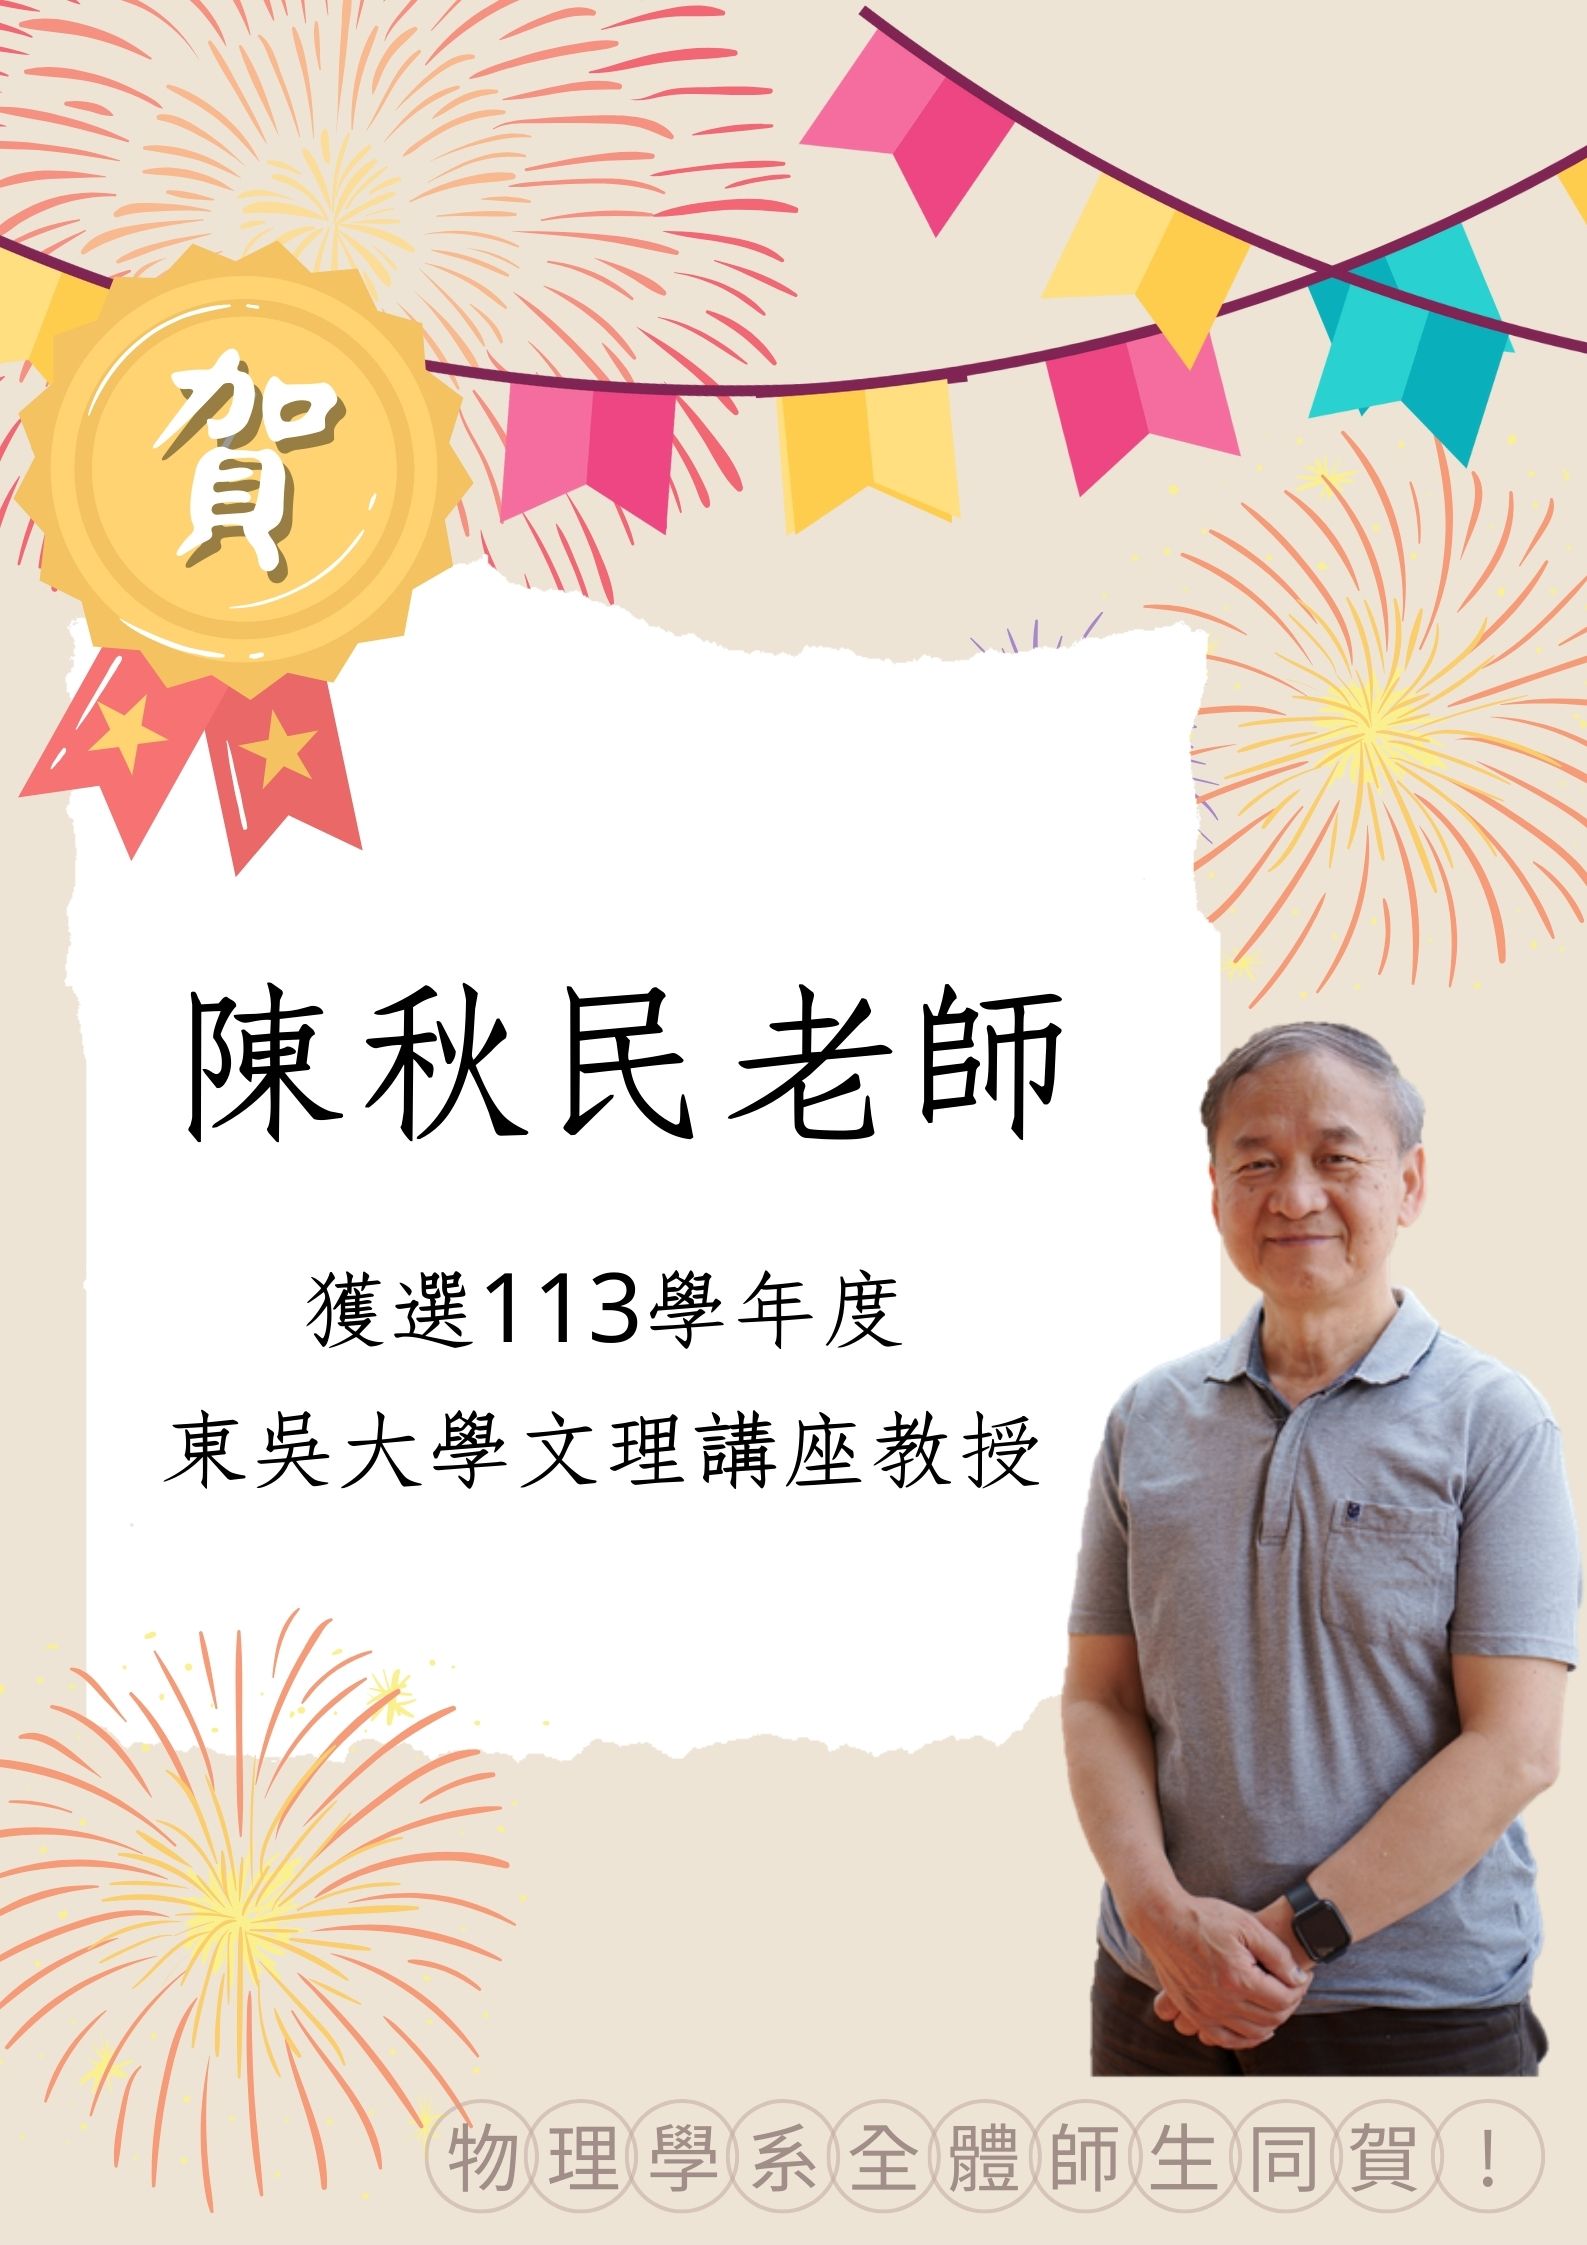 陳秋民老師獲選113學年度東吳大學文理講座教授